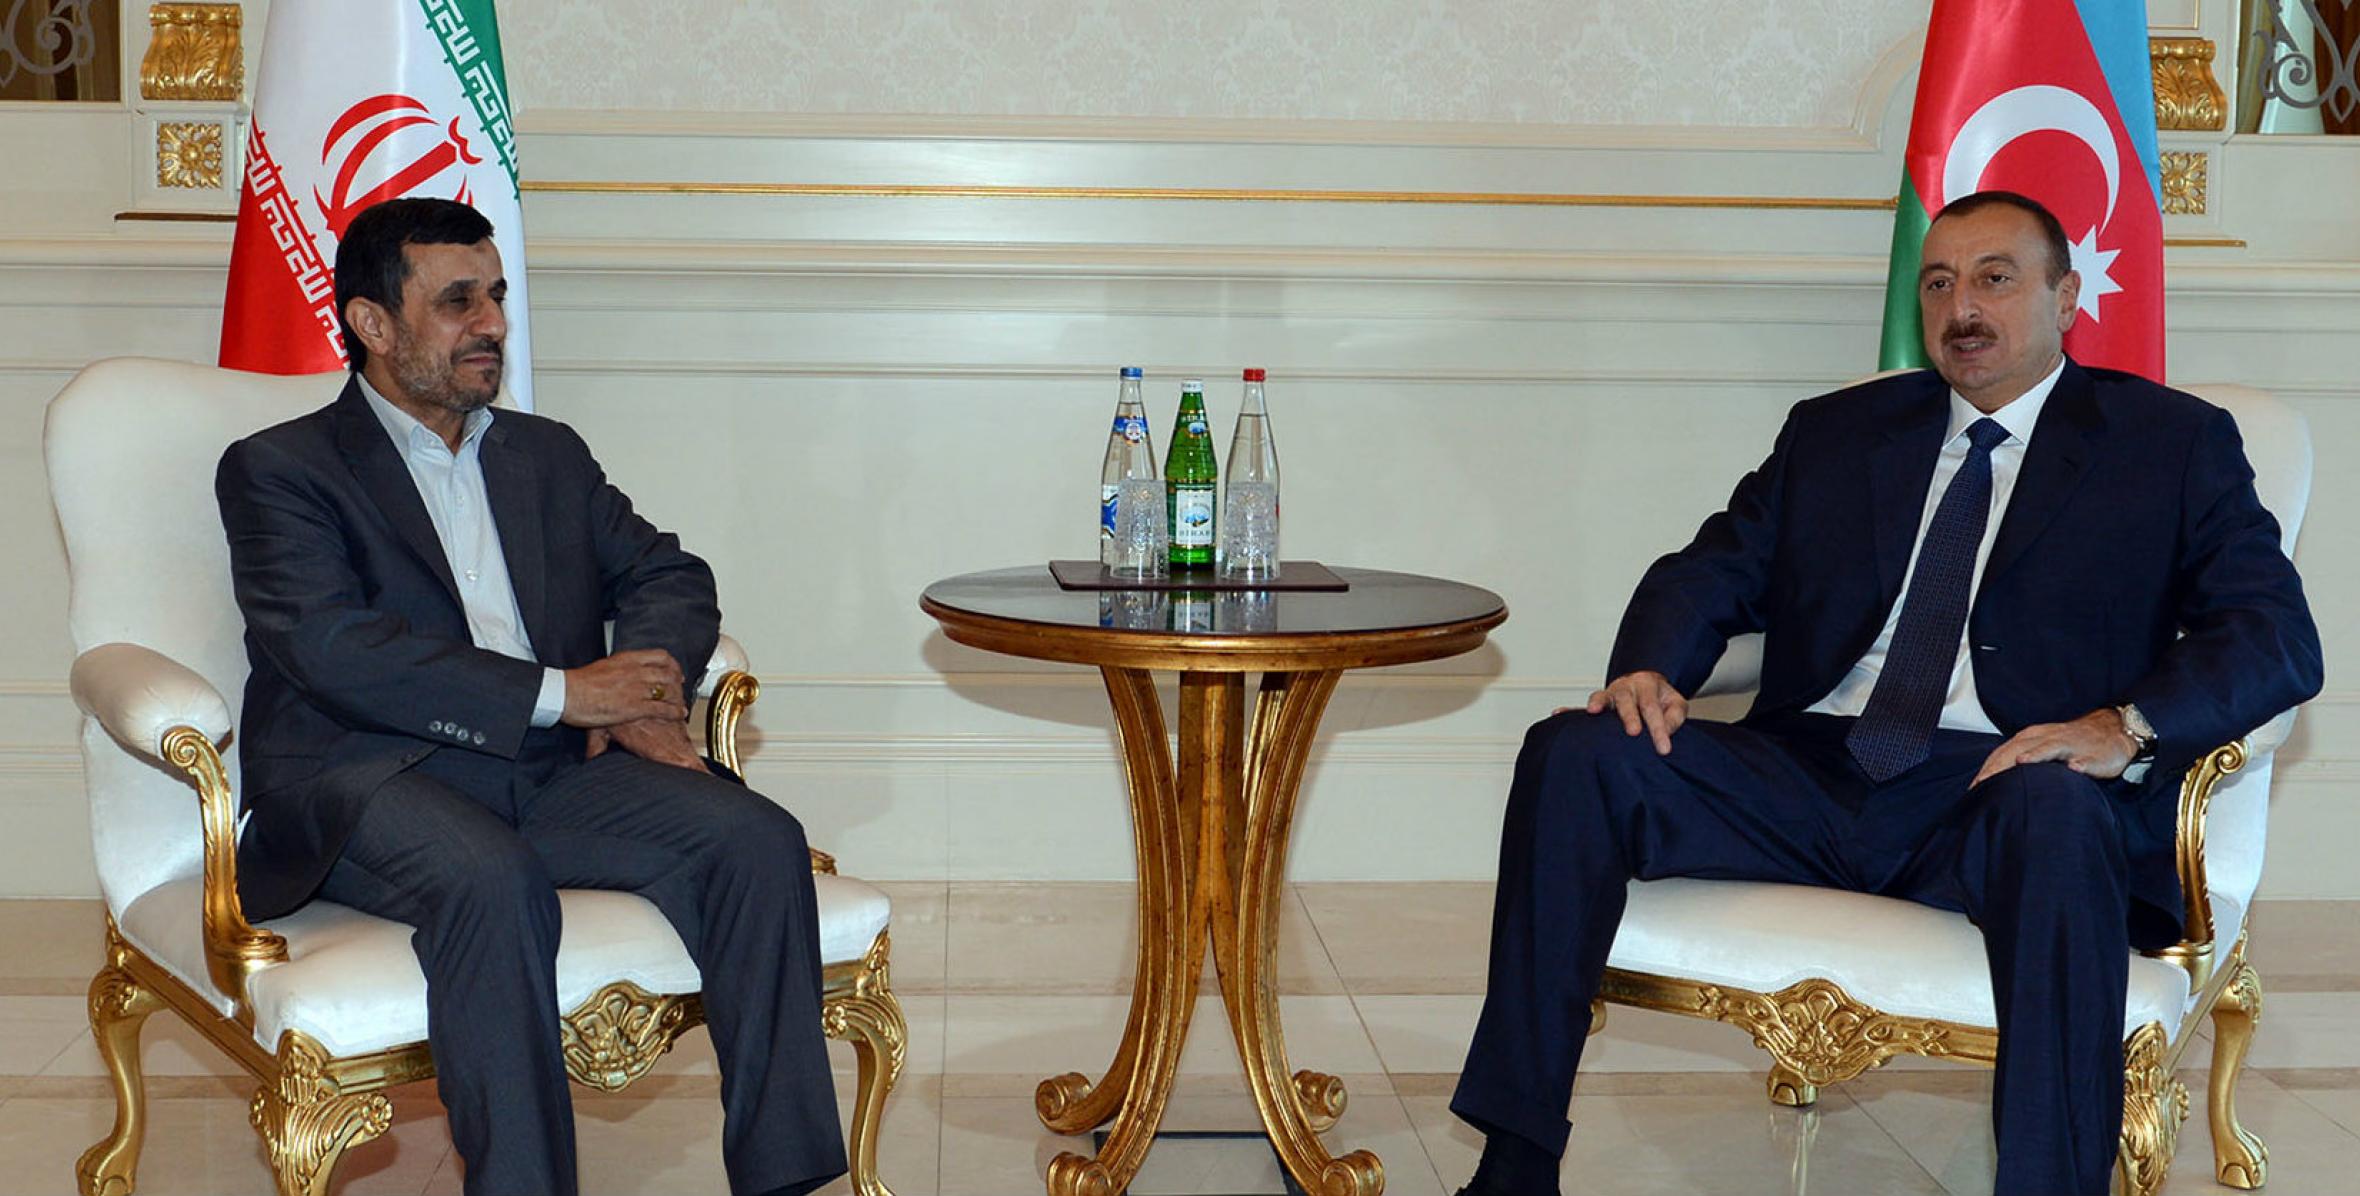 Ilham Aliyev met with President of Iran Mahmoud Ahmadinejad